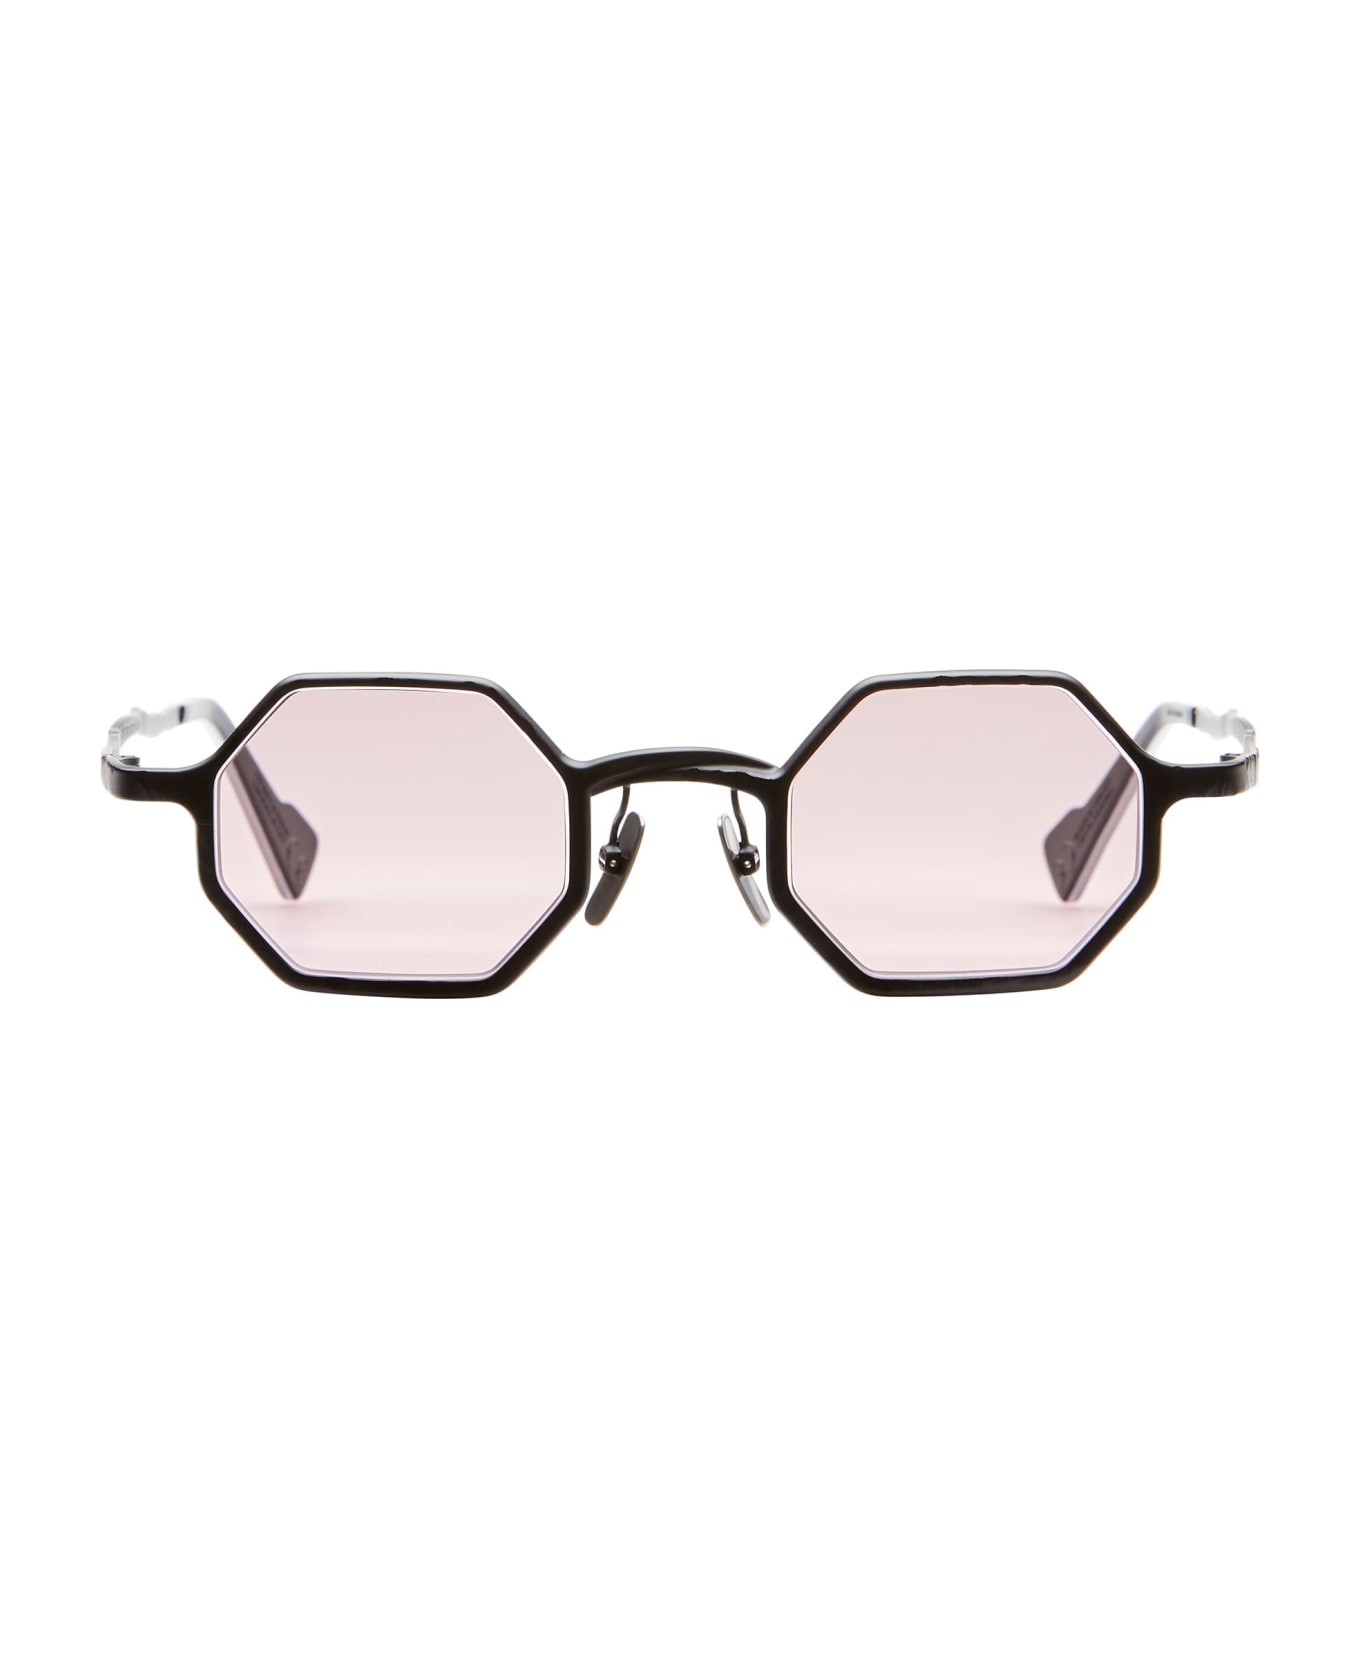 Kuboraum Mask Z19 - Black Matte Sunglasses - Silver サングラス